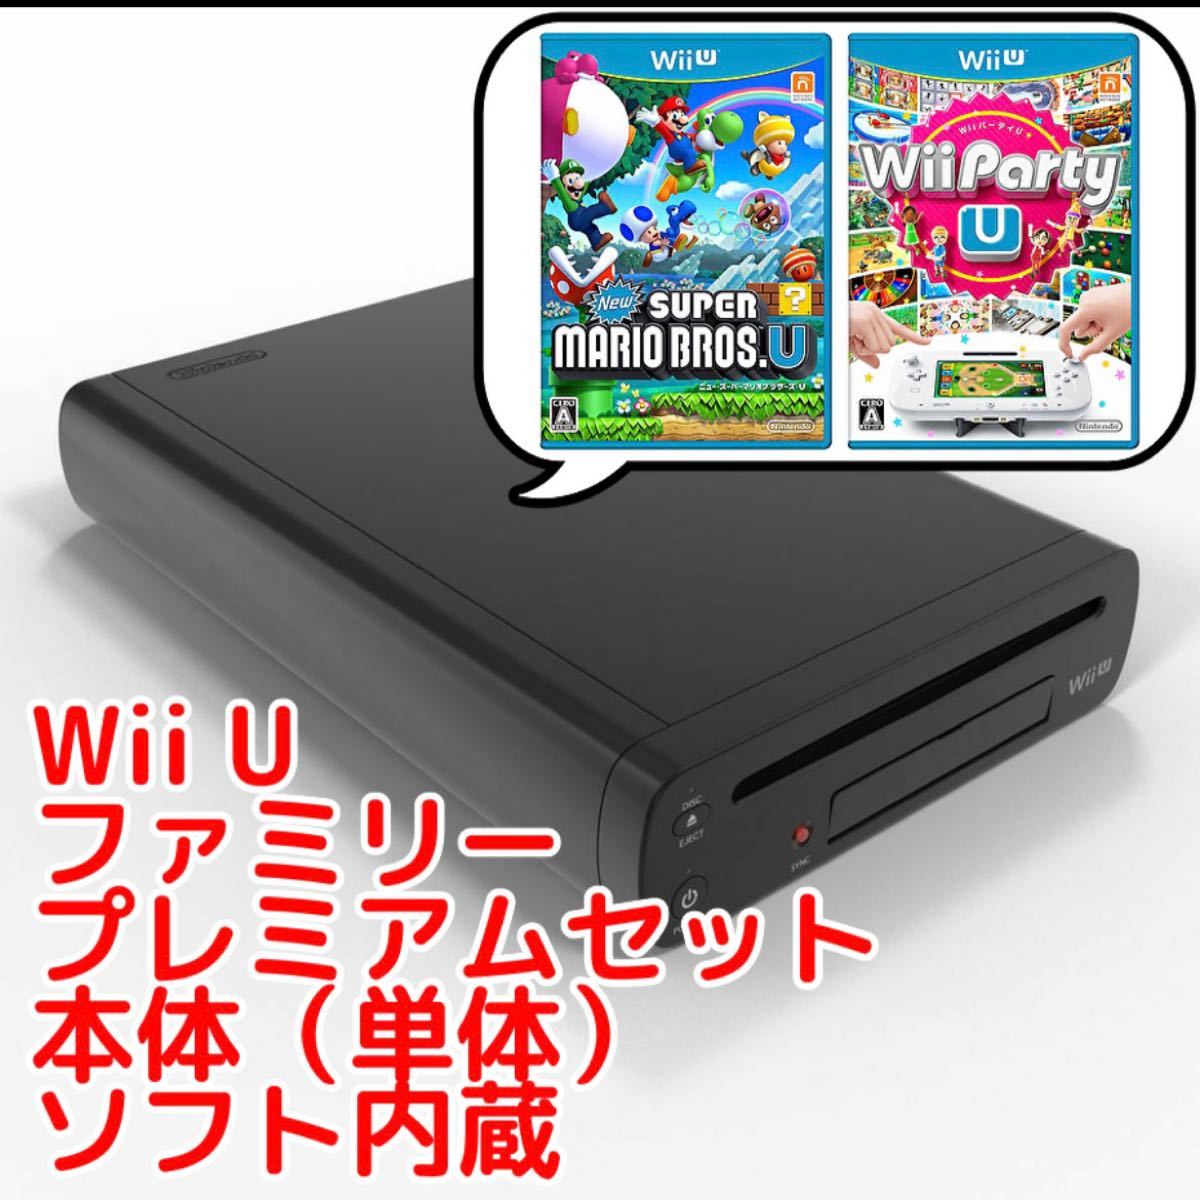 WiiU スーパーマリオ　Nintendo Wii U WII U ファミリーフレミアムセット KURO コントローラー２つ付き